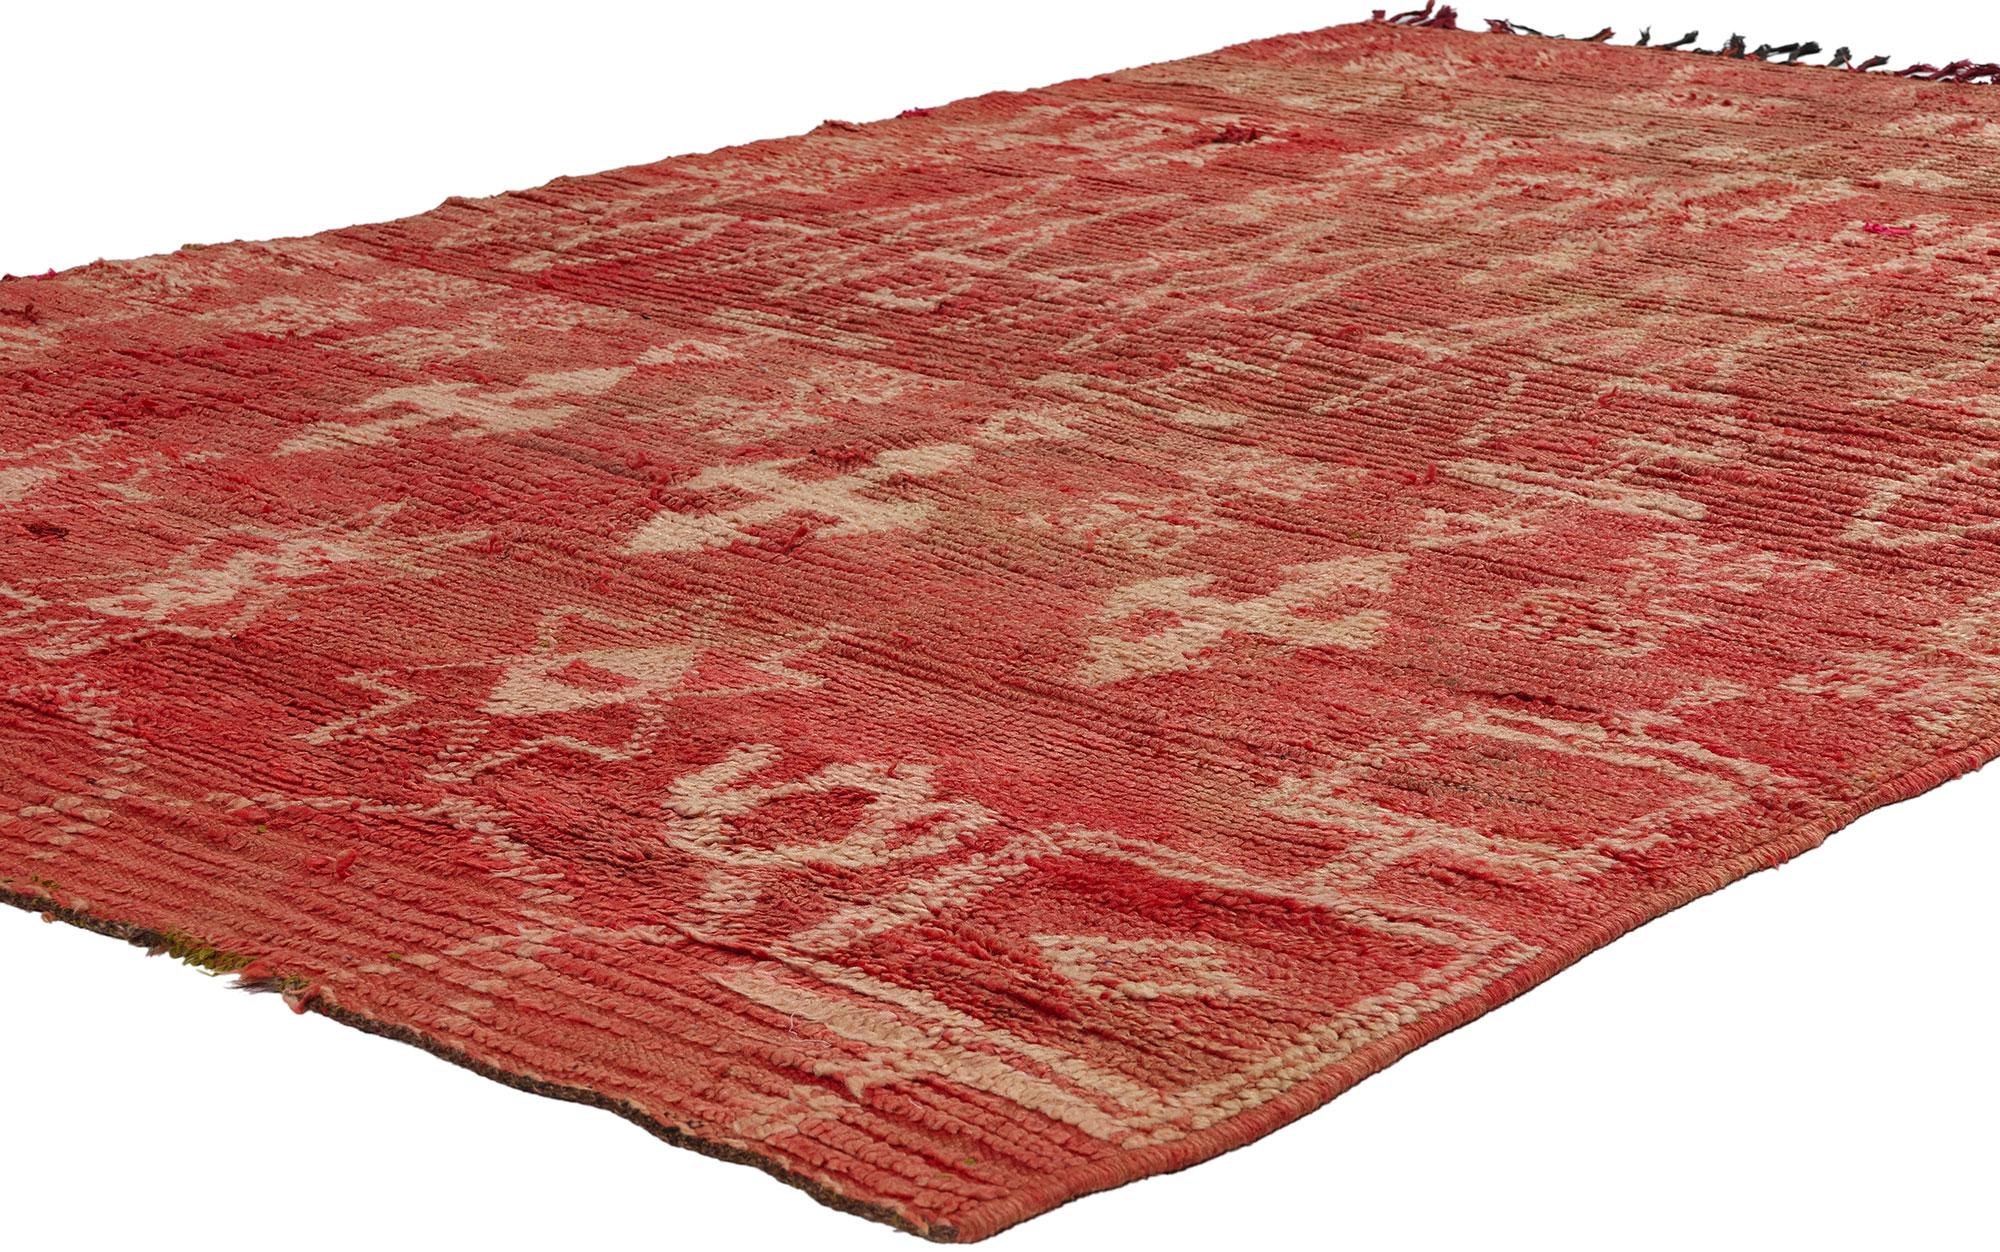 21814 Marokkanischer Teppich Vintage Red Boujad, 05'00 x 07'06. Die aus der marokkanischen Region Boujad stammenden Boujad-Teppiche sind exquisite handgewebte Meisterwerke, die tief in den Traditionen von Berberstämmen wie den Haouz und Rehamna